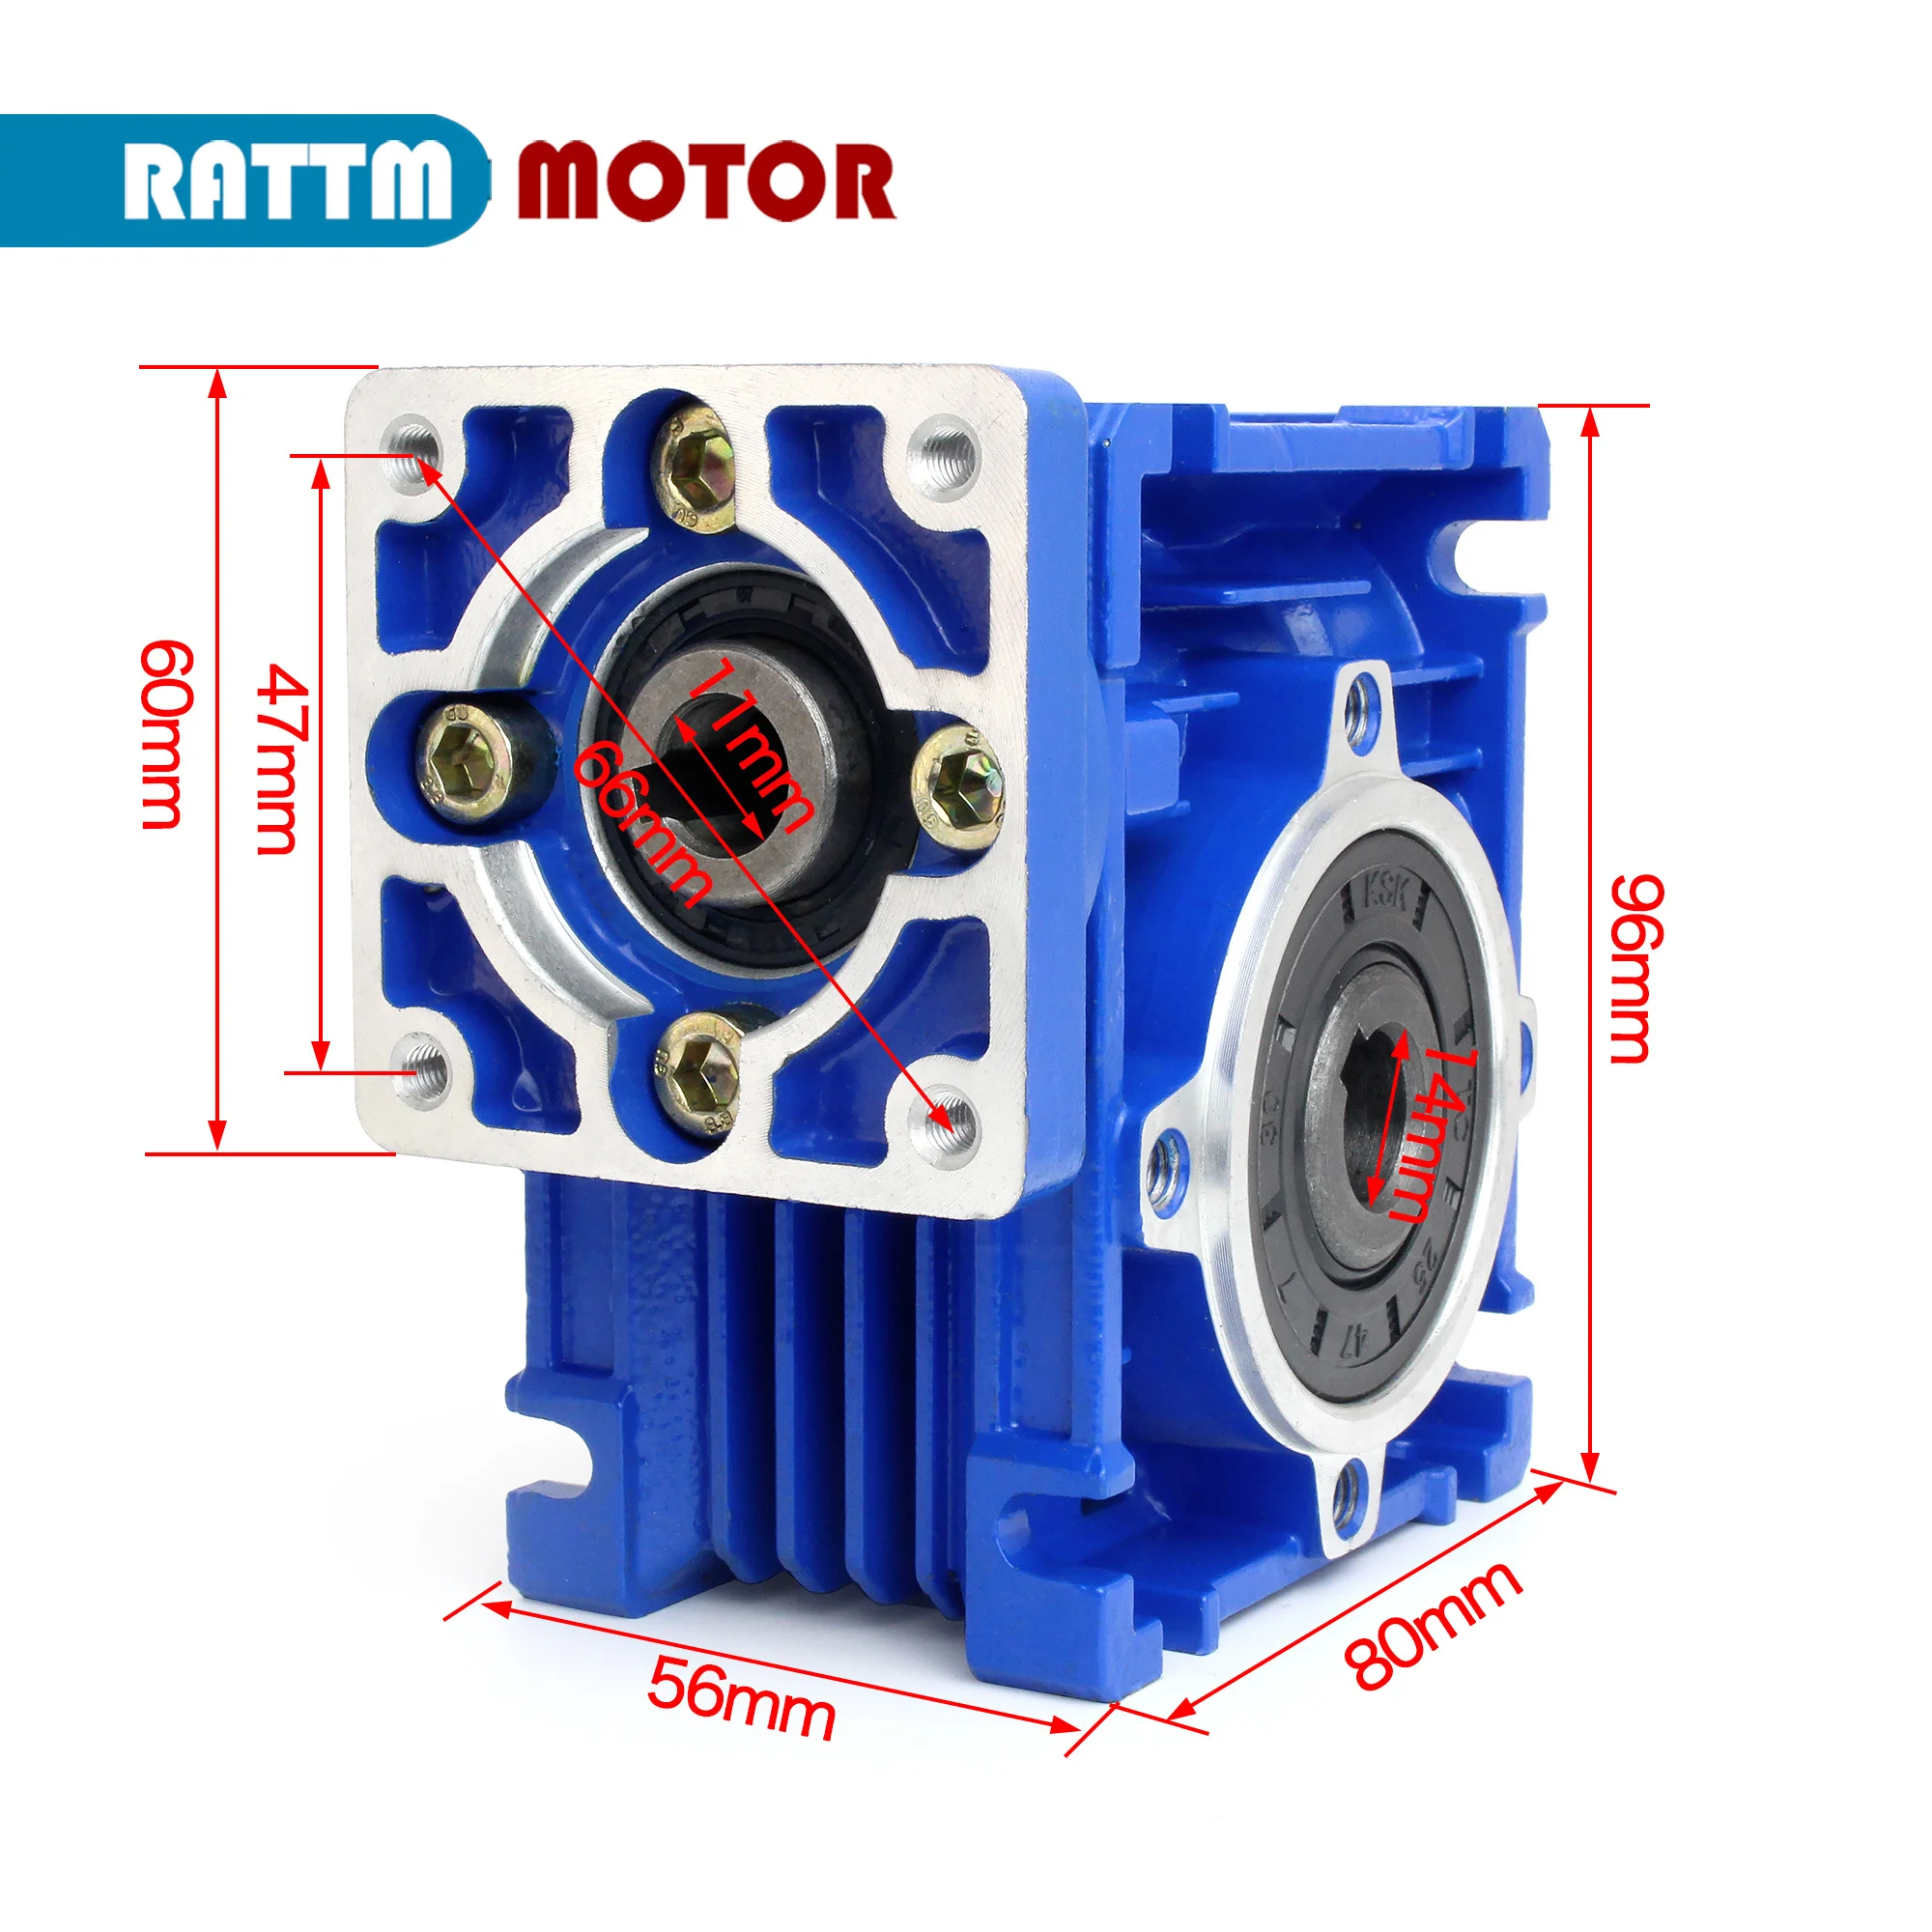 

NMRV030 reducer worm gear high torque gearbox reducer ratio 25:1 30:1 40:1 For NEMA23 step / servo motor